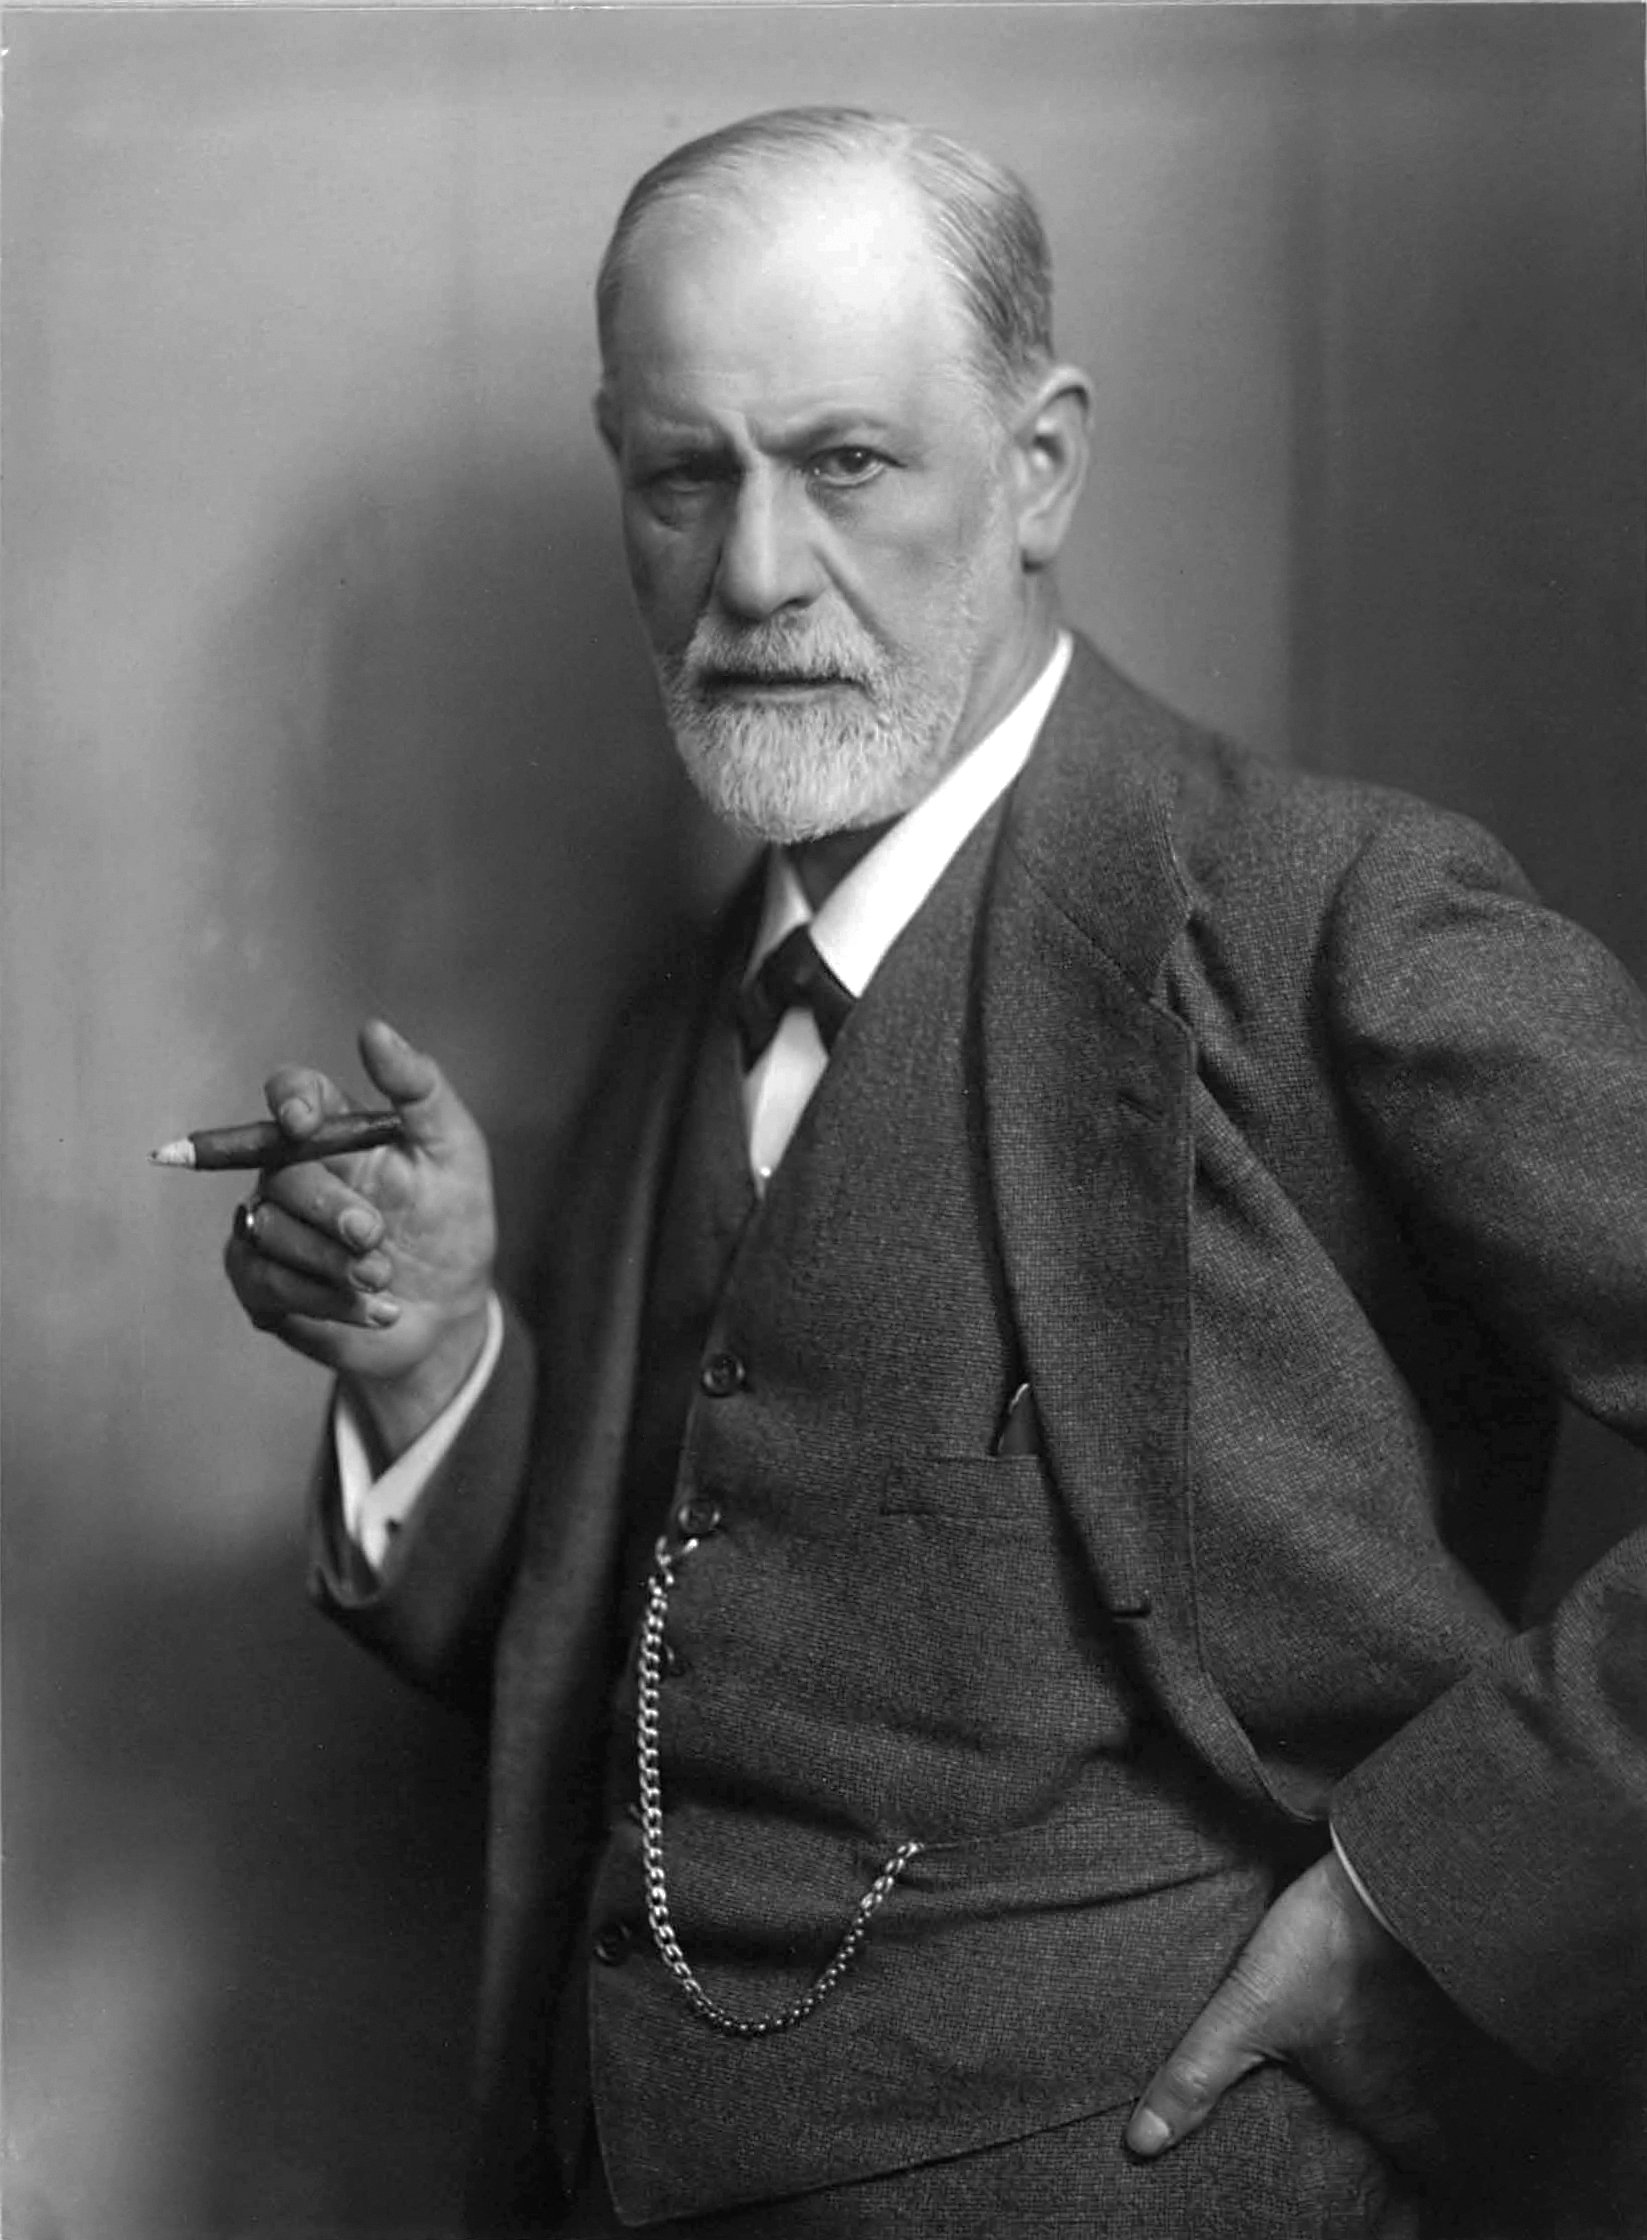 Portrait of Sigmund Freud holding a cigar